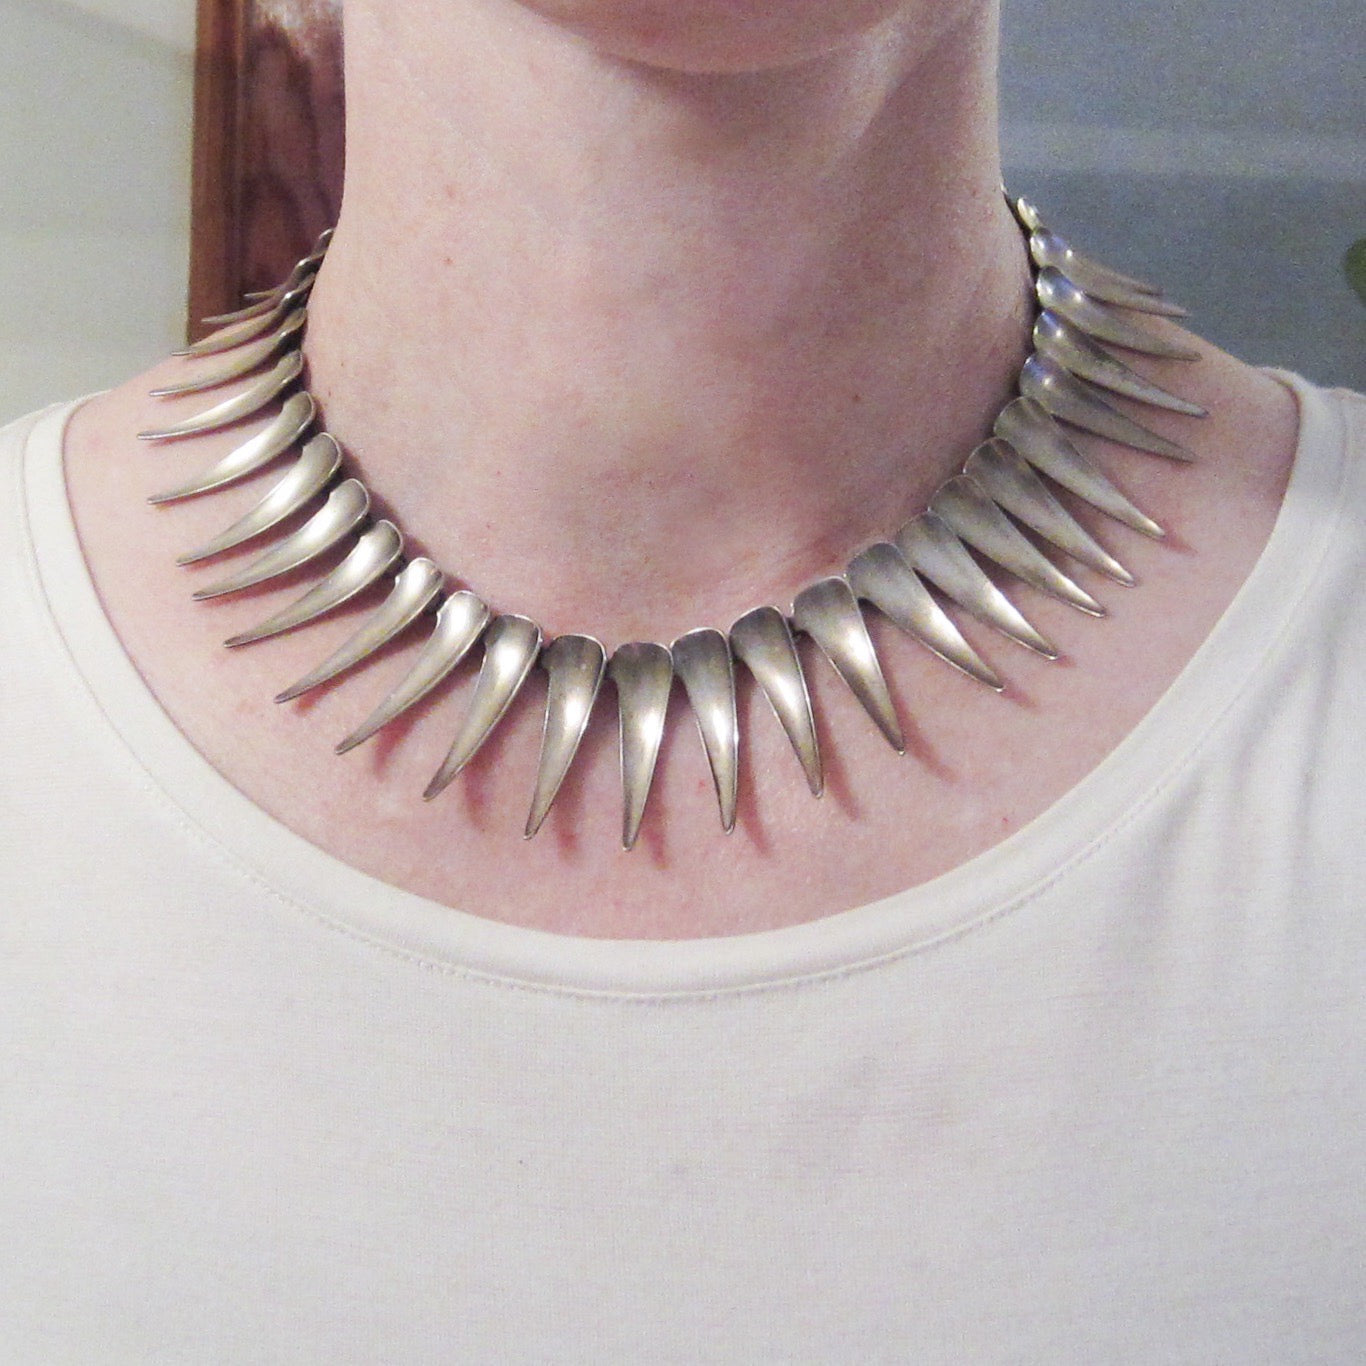 SOLD--Modernist Atomic Age Necklace Sterling Silver, Sweden, Atelier Borgila c. 1958